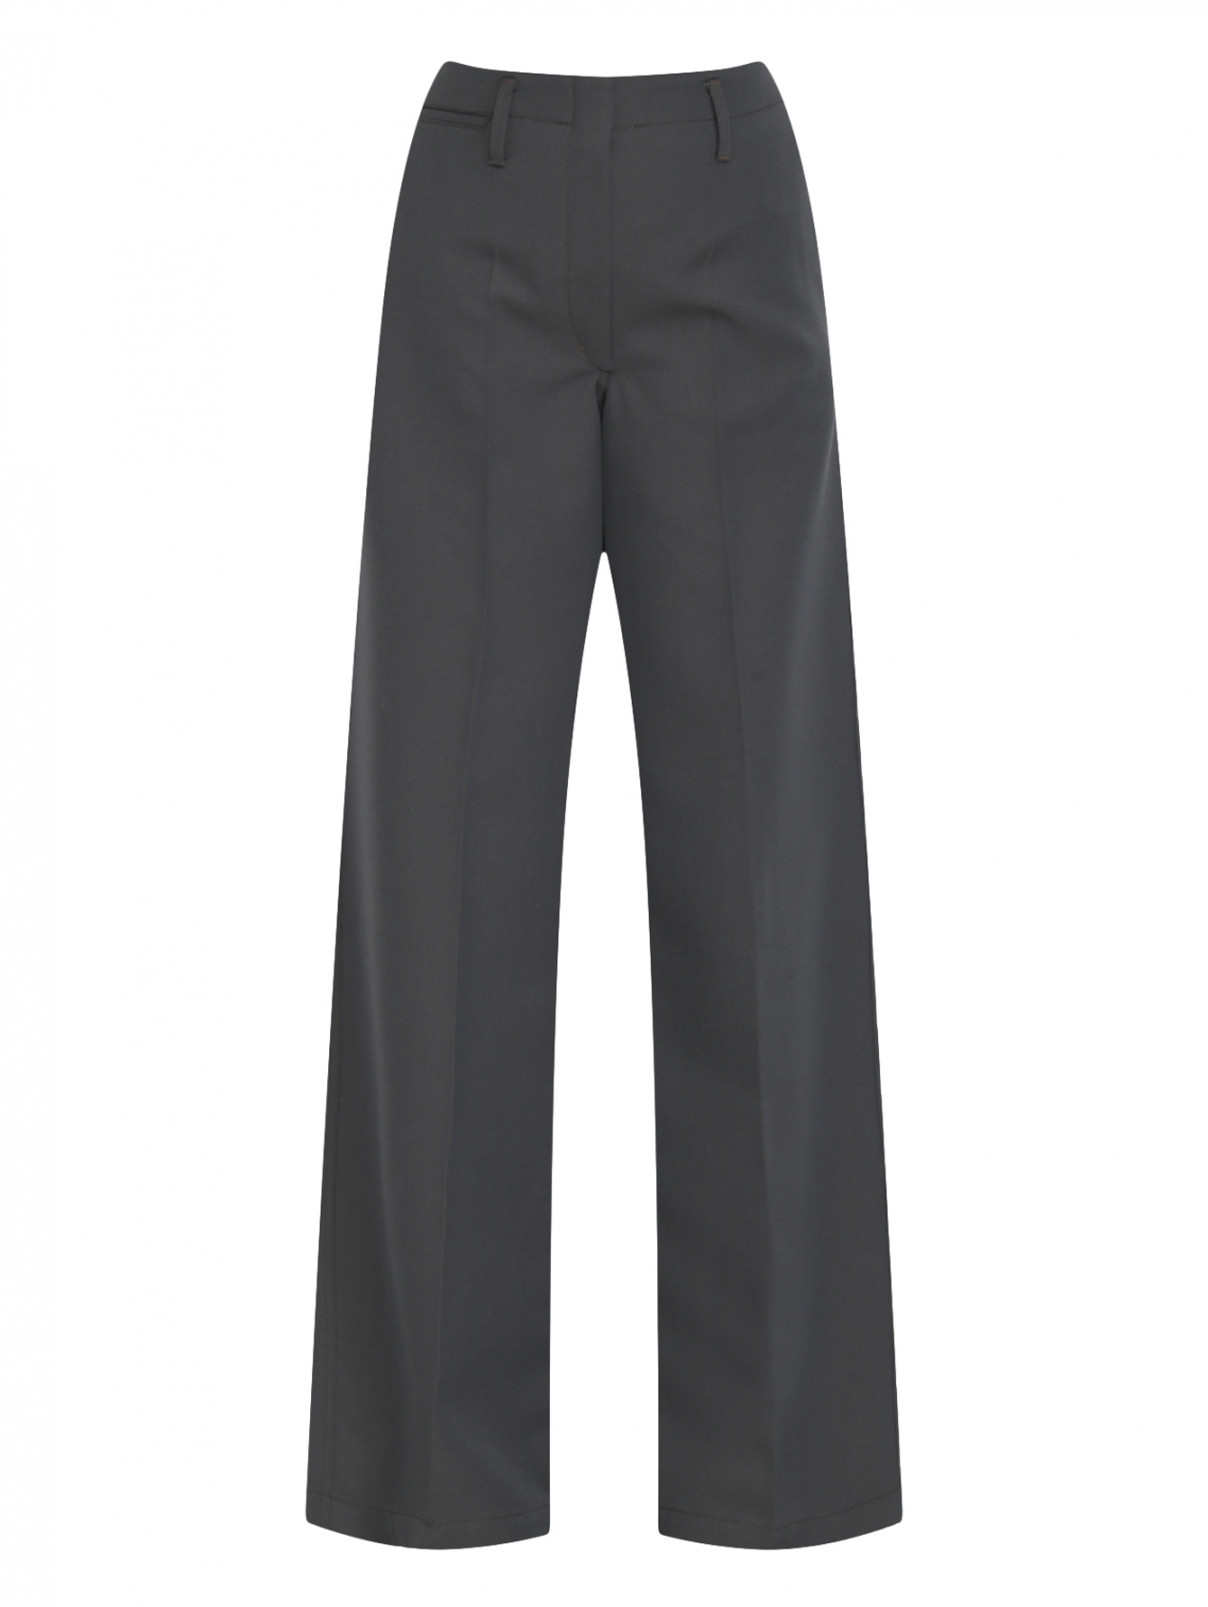 Широкие брюки со стрелками Lemaire  –  Общий вид  – Цвет:  Серый